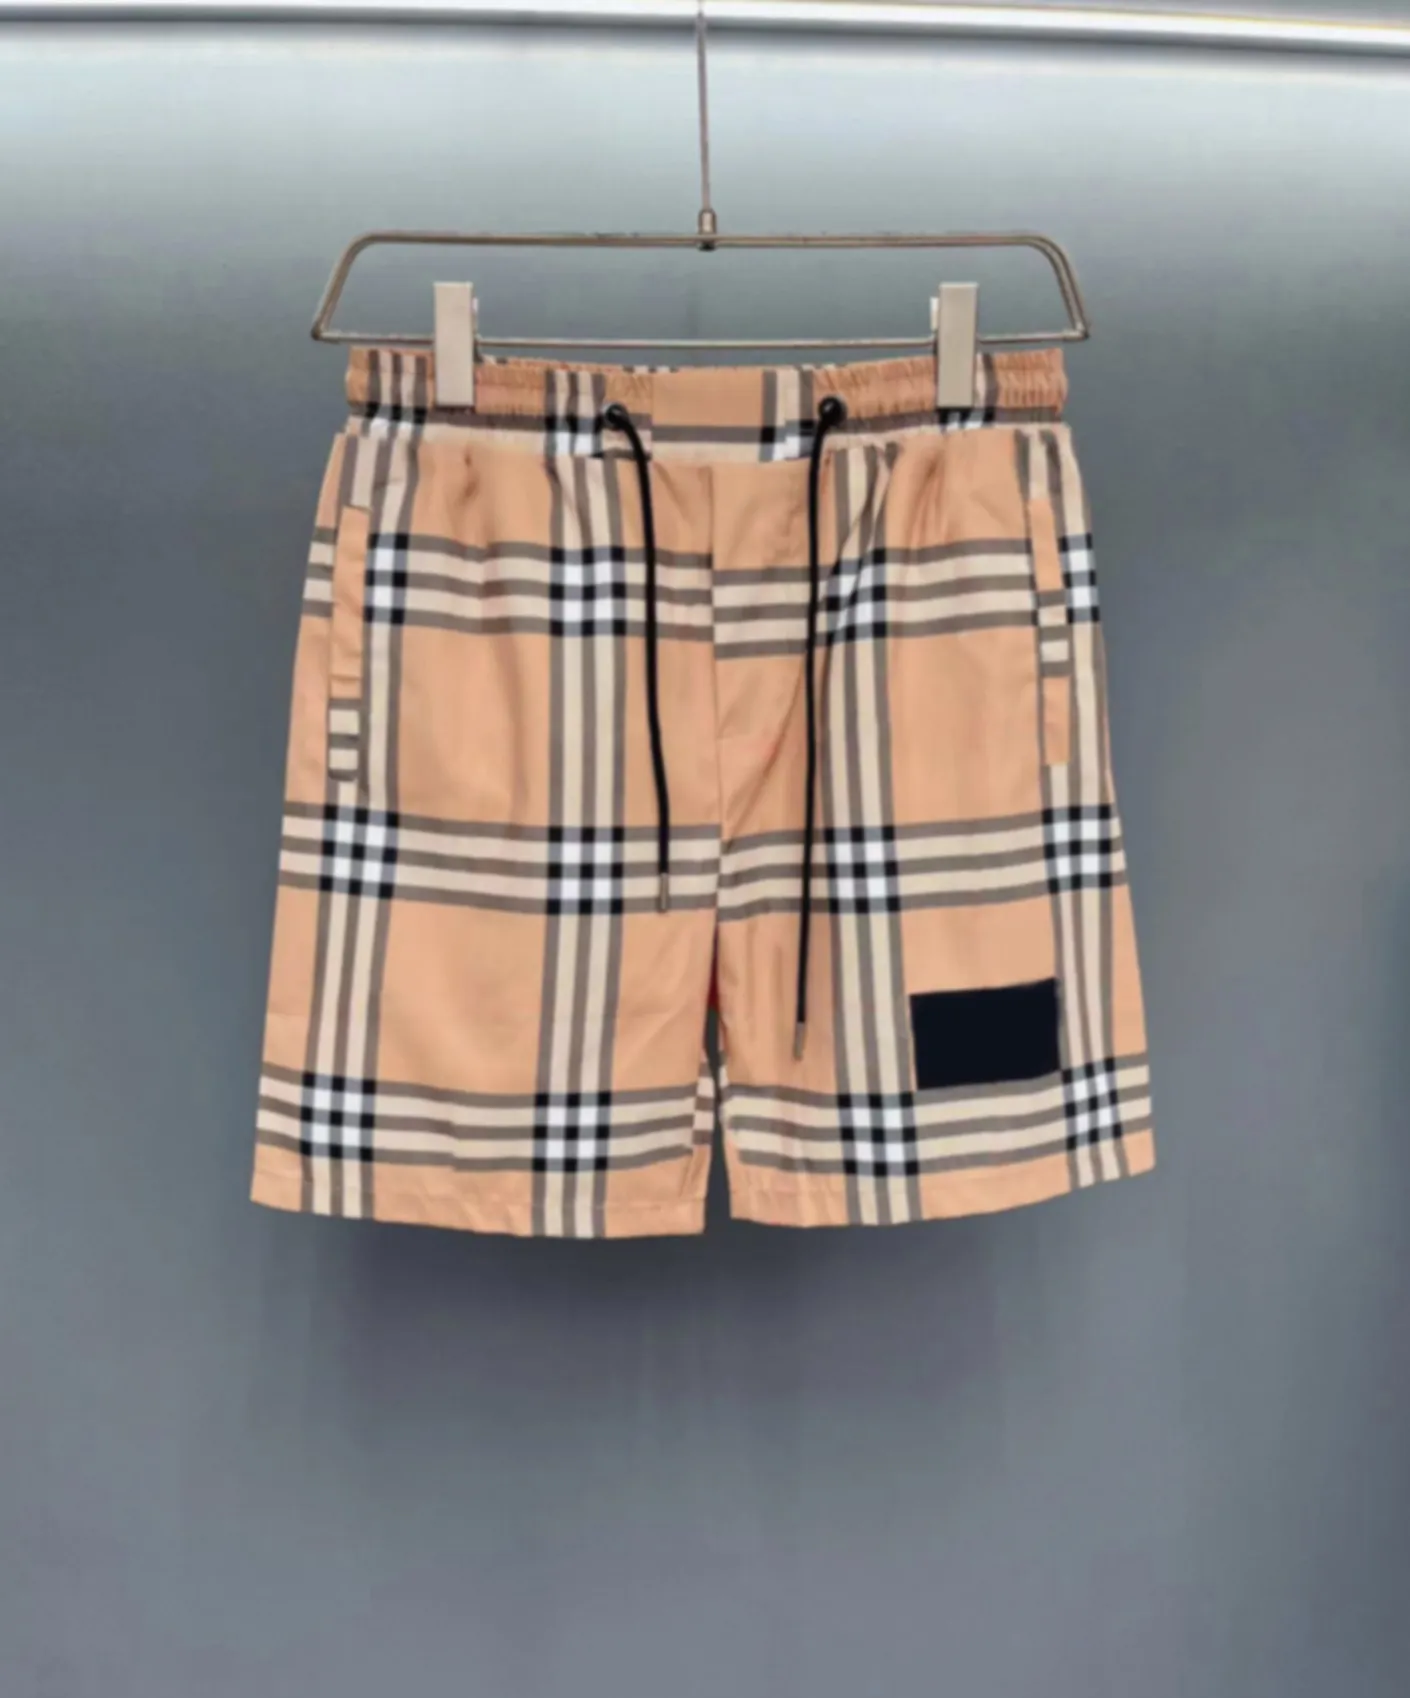 Krótkie szorty Swim Shorts Męskie szorty Projektant Designer Projektantka Kobiety Męskie spodnie damskie spodenki pantaloncini gimnastyczne szorty dla męskich rozmiar Vibrequin